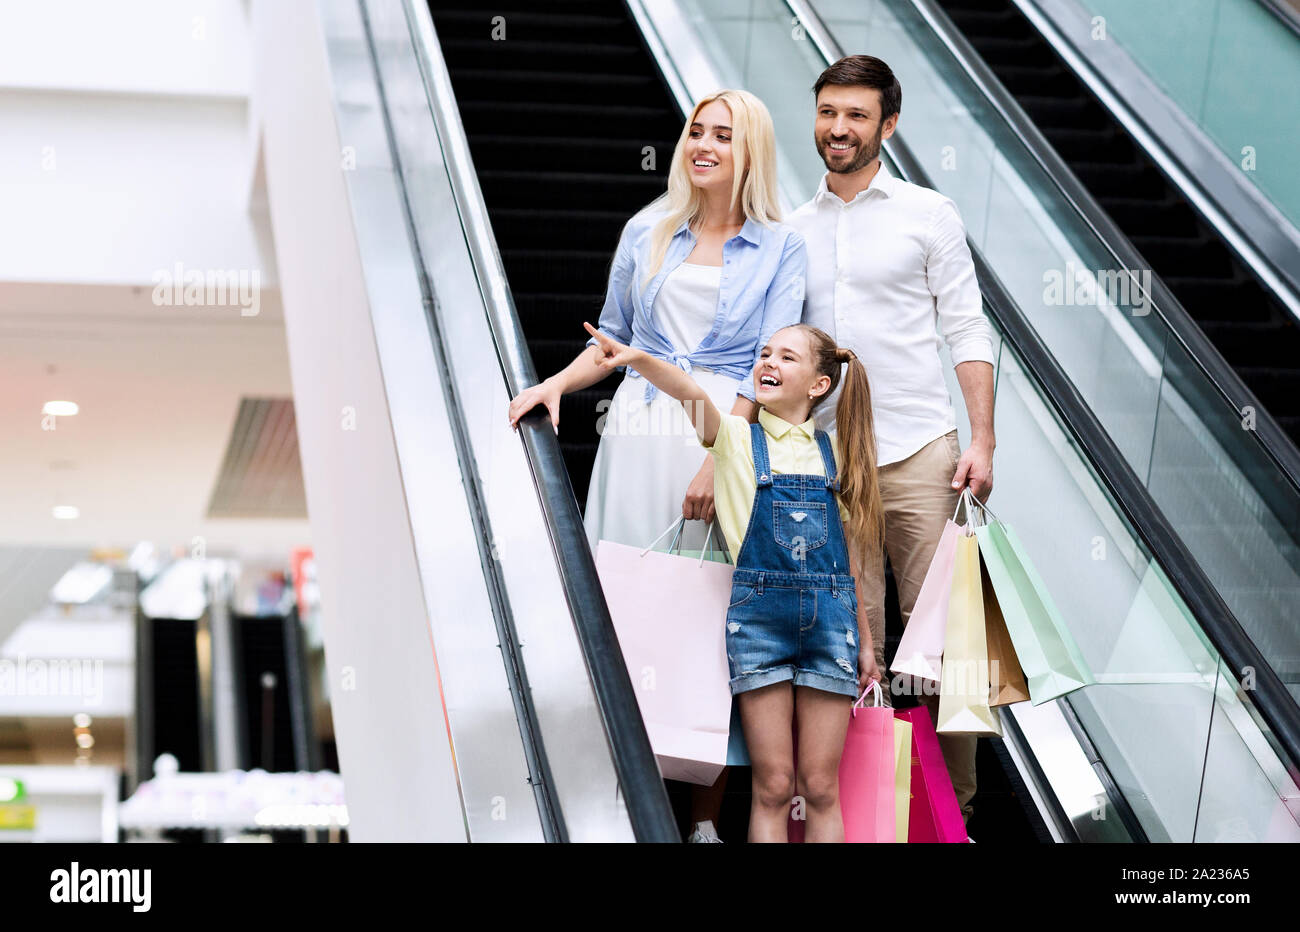 Familie Shopping Konzept. Tochter Zeigefinger auf der Rolltreppe, Eltern zu etwas In Mall kaufen. Freier Speicherplatz Stockfoto